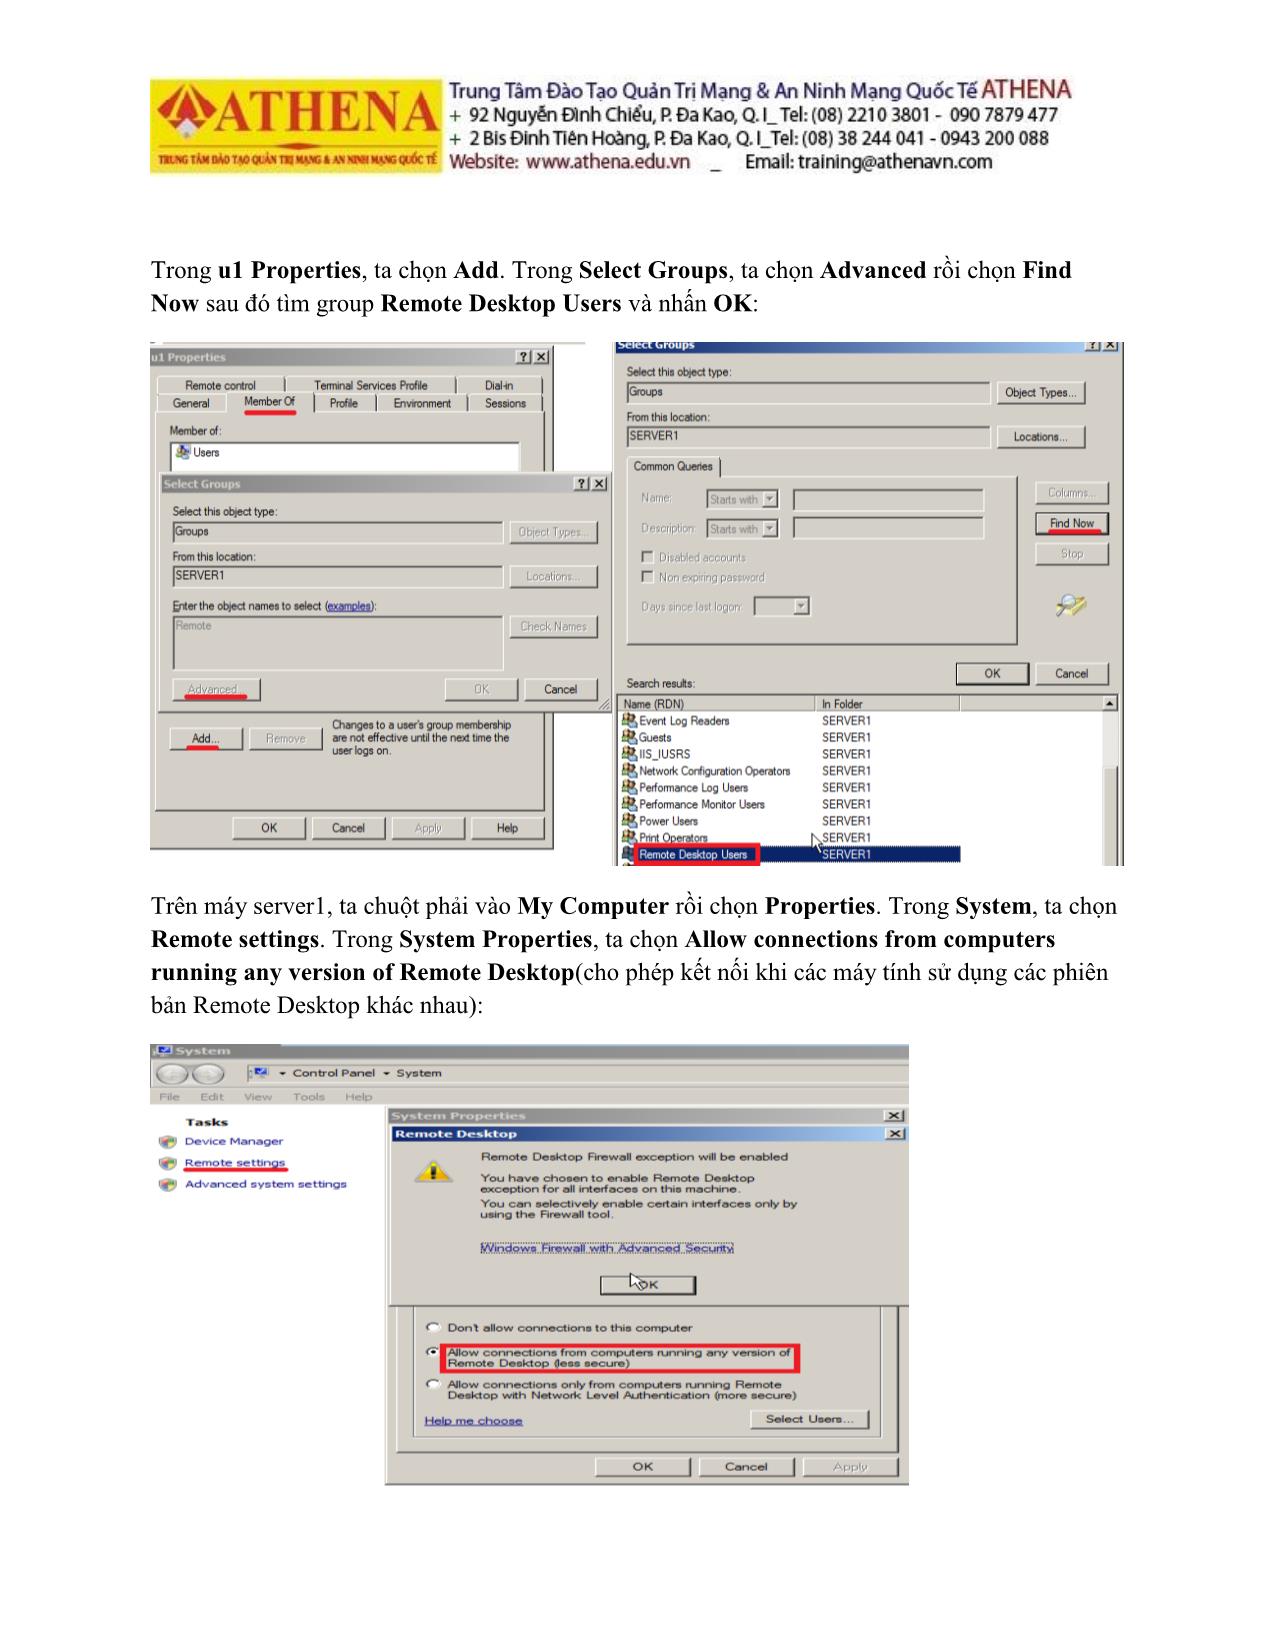 Tài liệu Hướng dẫn thực hành quản trị mạng - Remote desktop trang 3